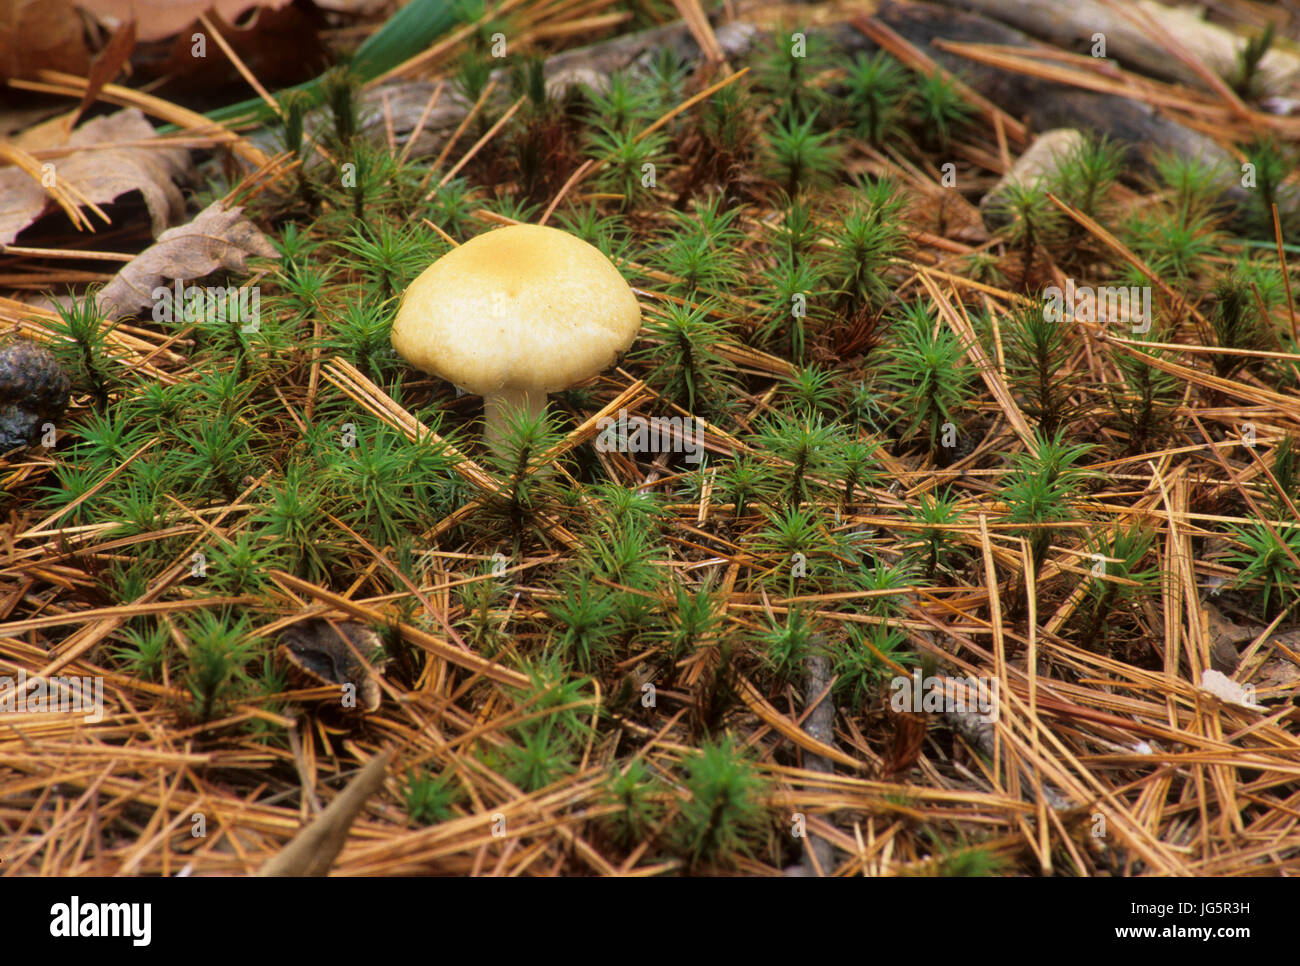 Mushroom on moss, Massabesic Audubon Center, New Hampshire Stock Photo